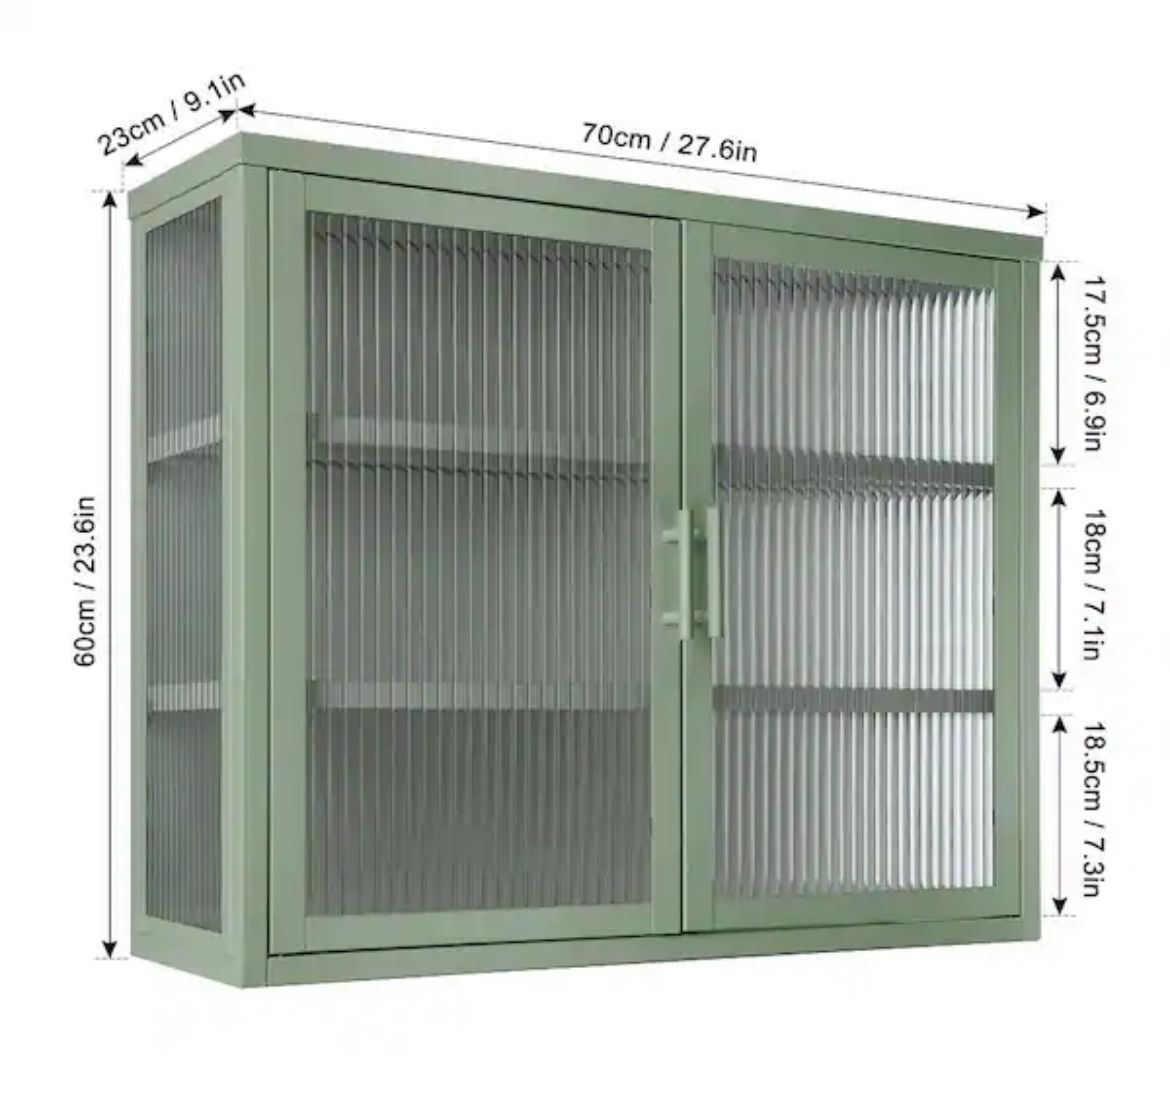 Double Glass Door Mint Cabinet - Bathroom - Living Room - Storage Cabinet